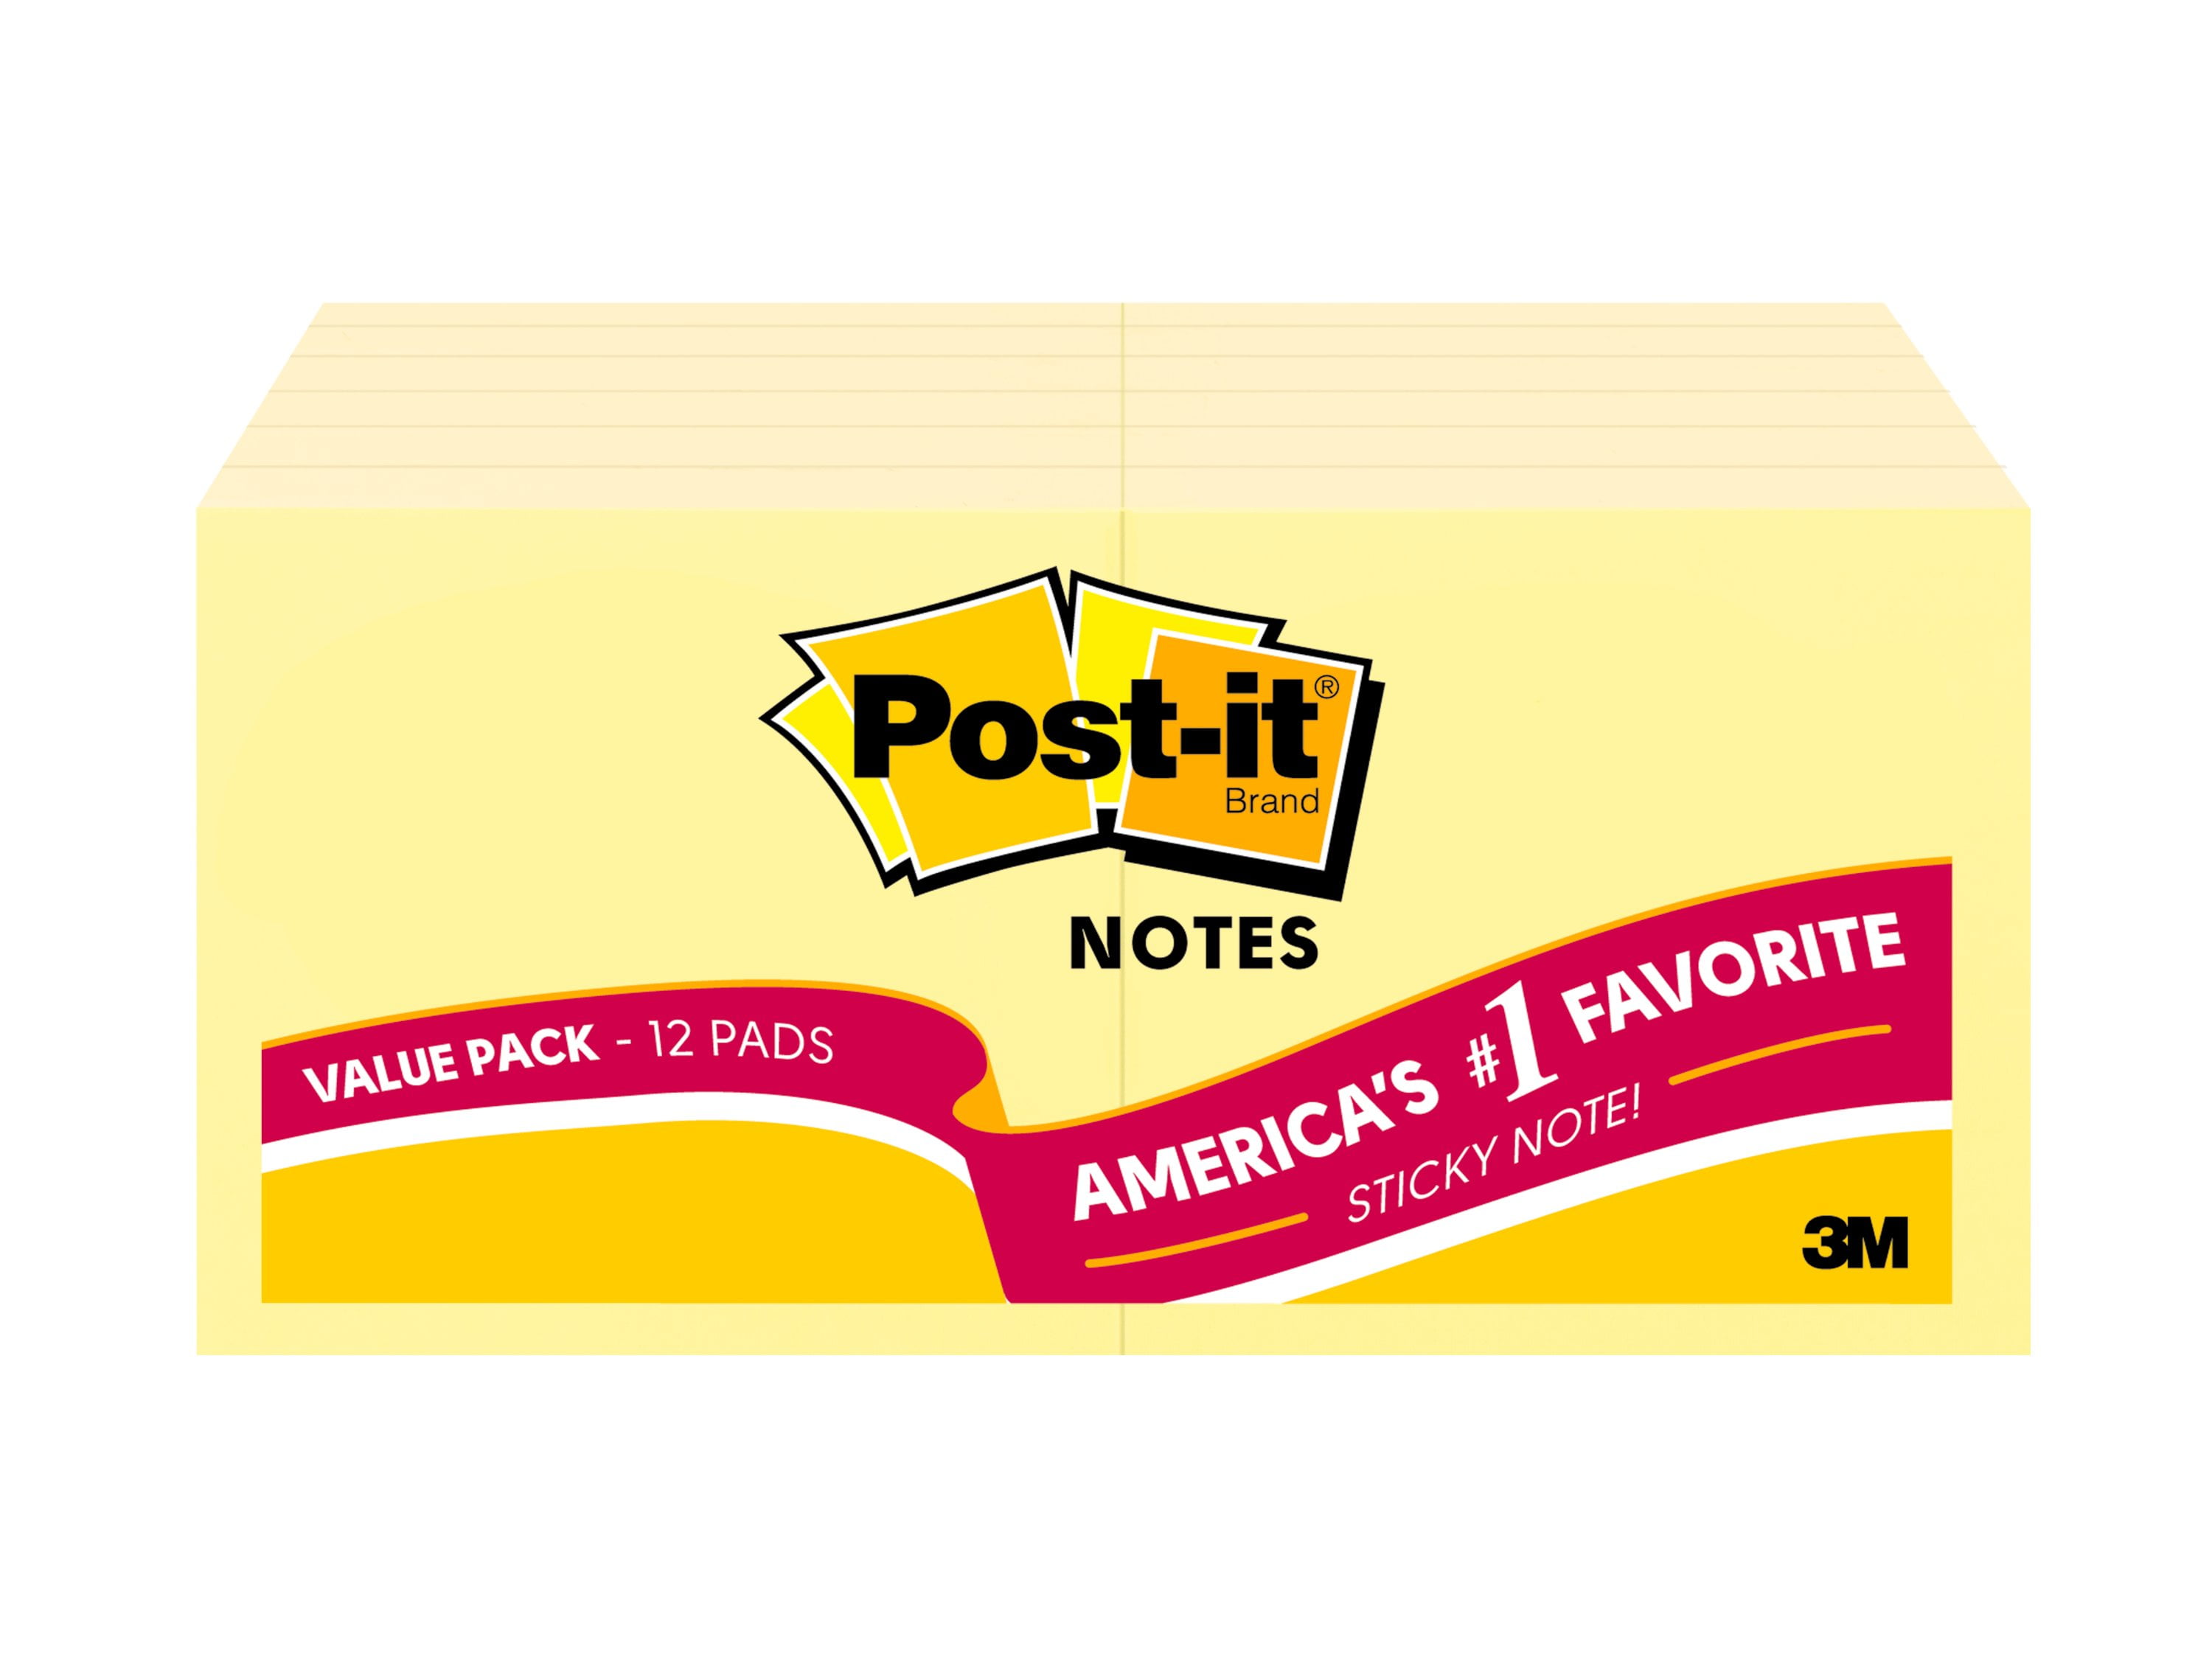 500 Pcs 3x3" Removable Sticky Post Sticky Notes  Self-Stick Pads For Office Home